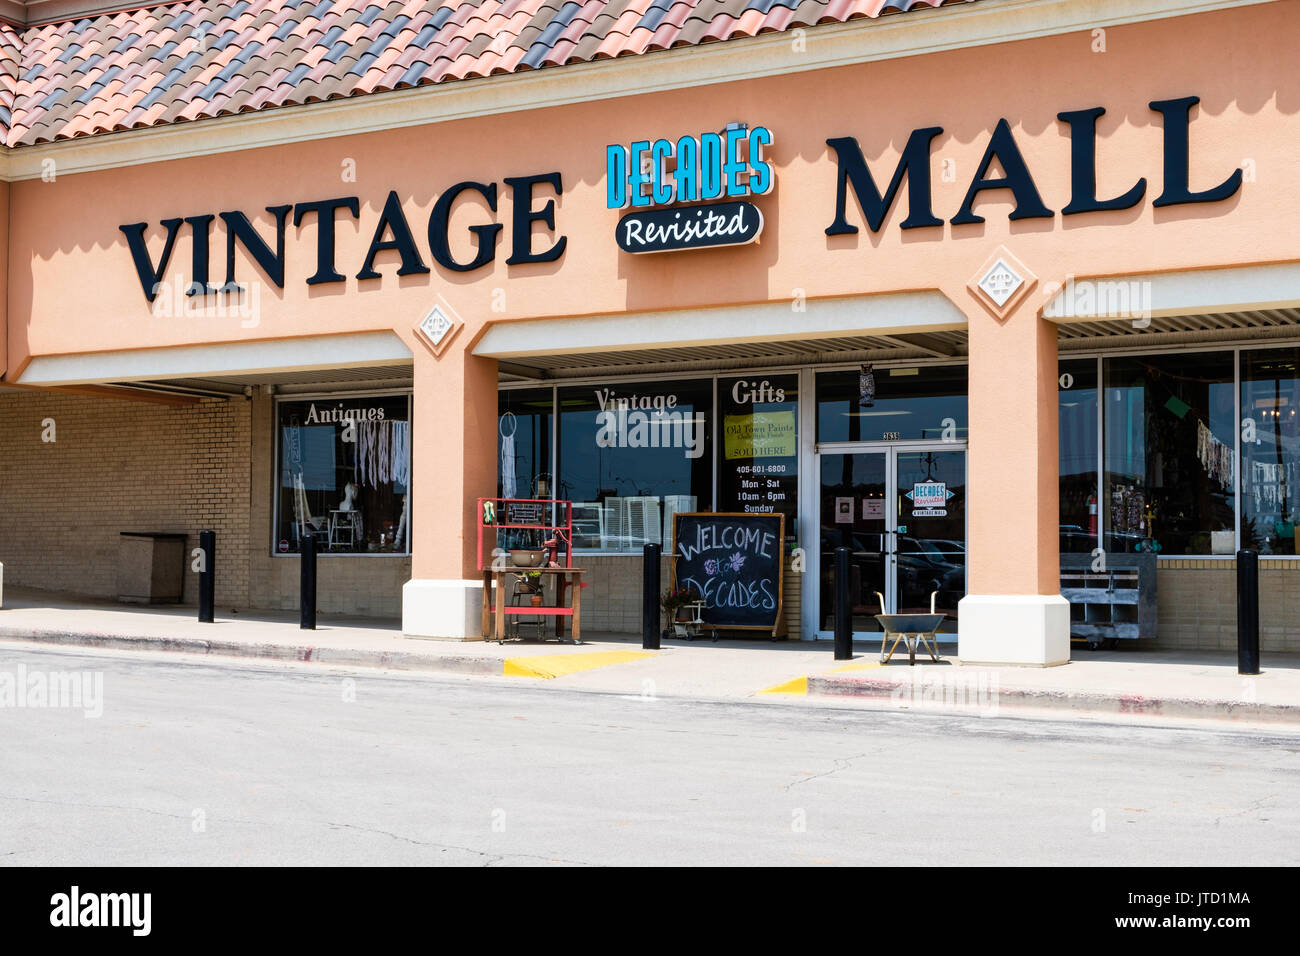 La décennie Vintage Mall, un magasin de vente vintage ou vieux ou ancien marchandise dans un centre commercial à Oklahoma City, Oklahoma, USA. Banque D'Images